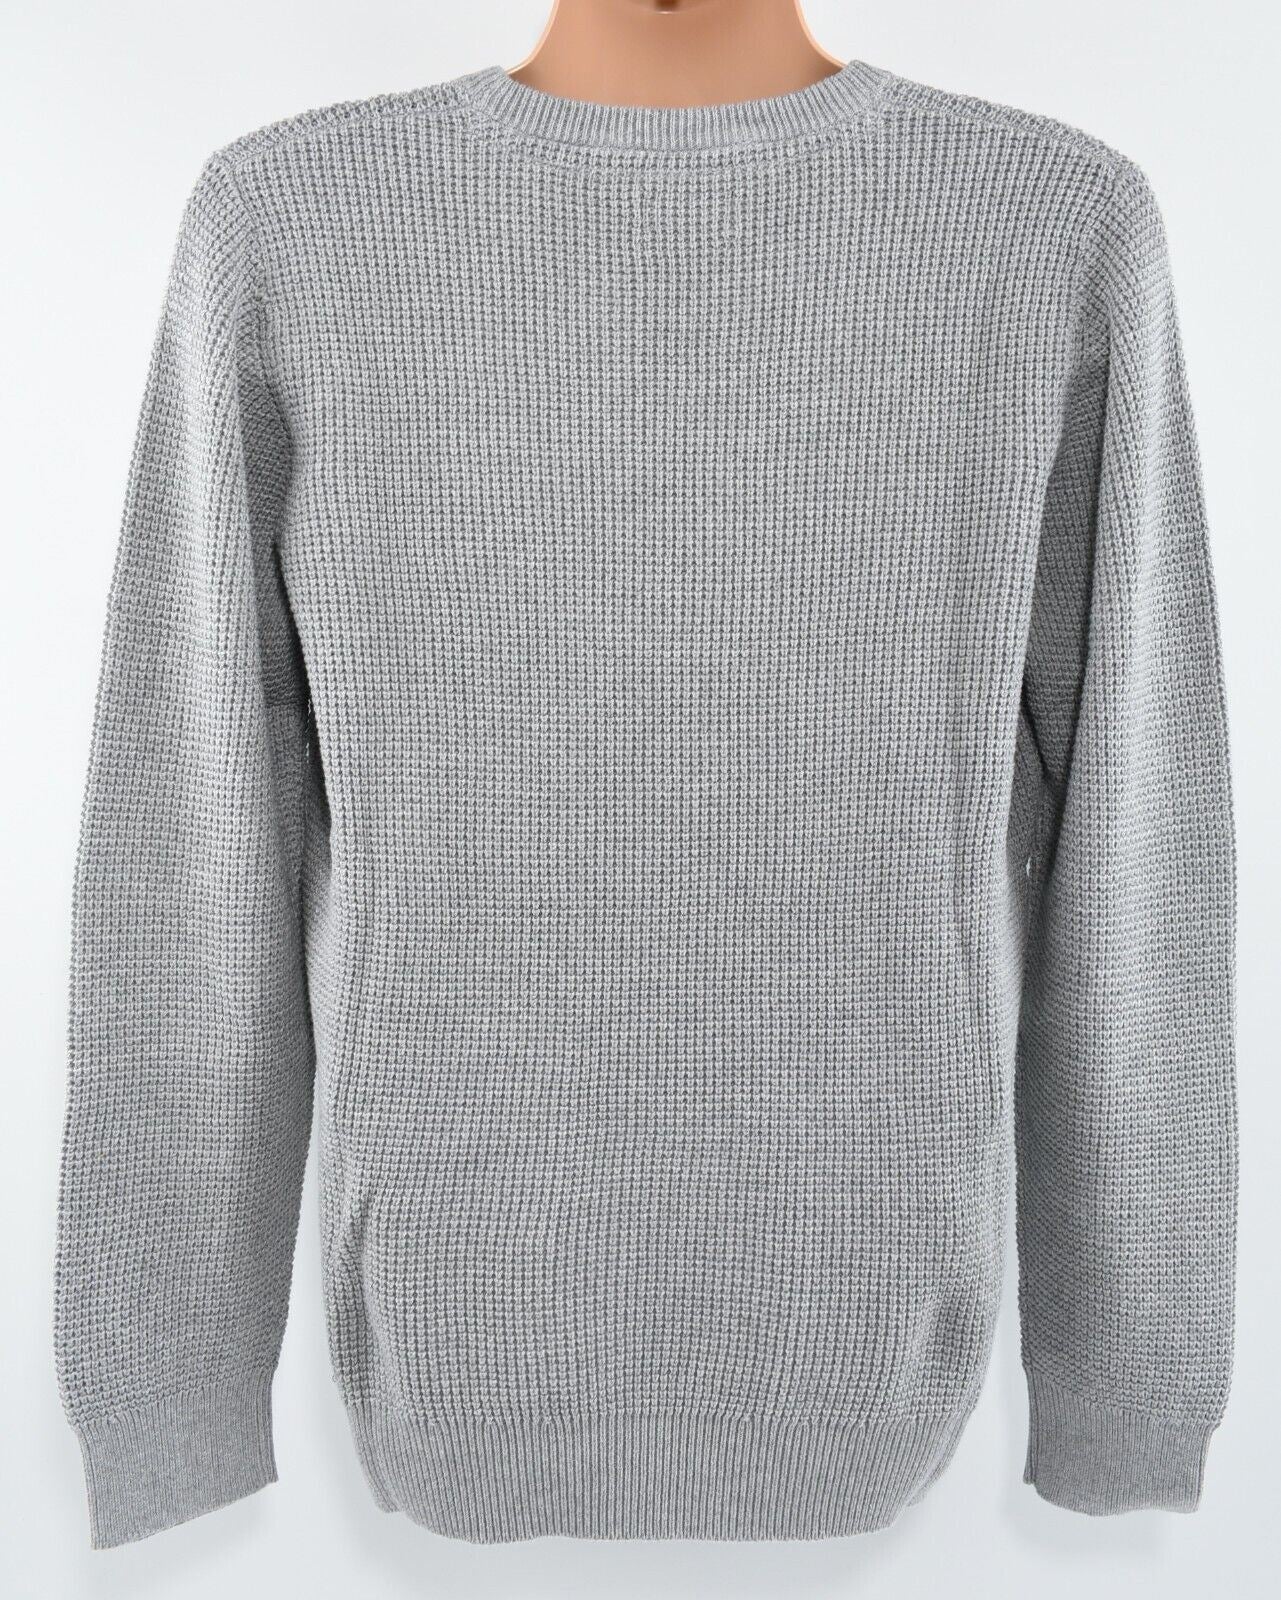 O'NEILL Men's TUCK Pullover Jumper, 100% Cotton Knit, Silver Grey, size MEDIUM